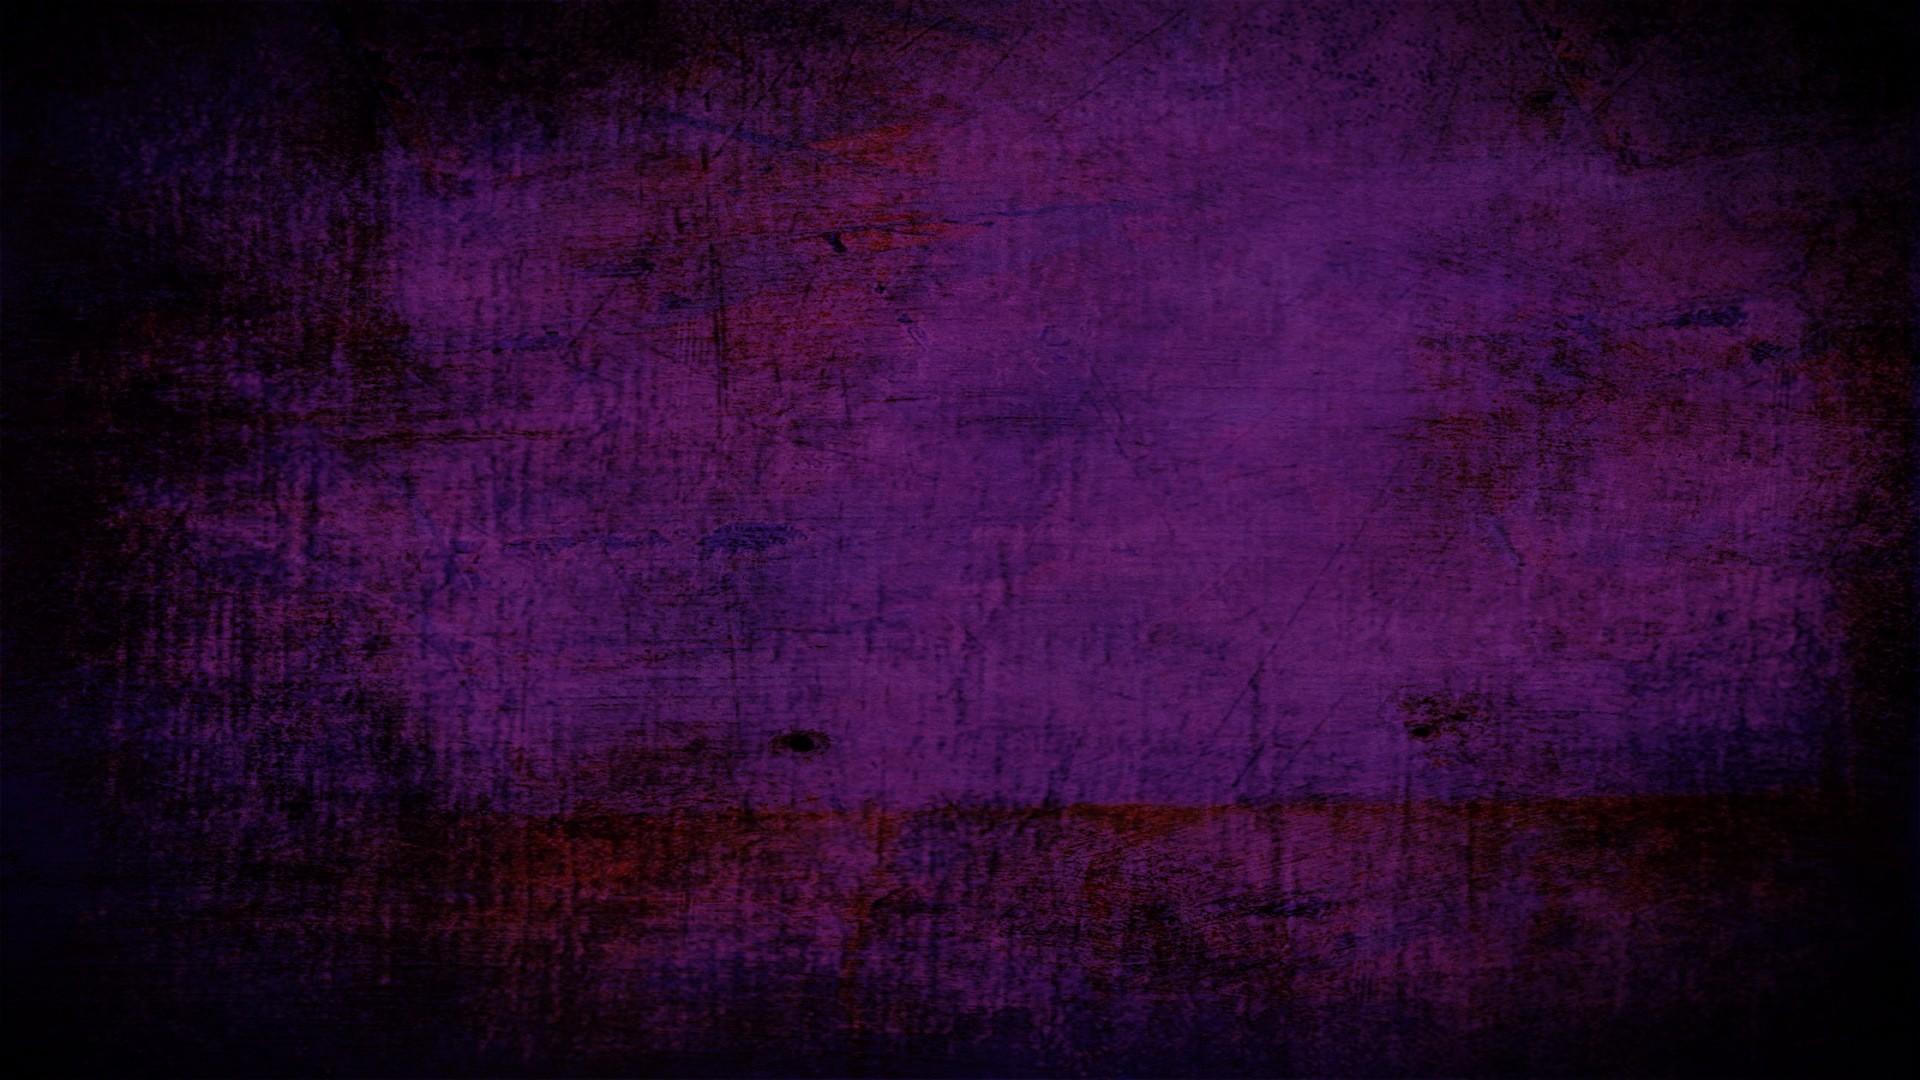 Tông màu tím huyền bí luôn có sức hấp dẫn đặc biệt. Hãy khám phá bức hình mang đậm chất thẩm mỹ purple aesthetic để được trải nghiệm những cảm xúc khác lạ.